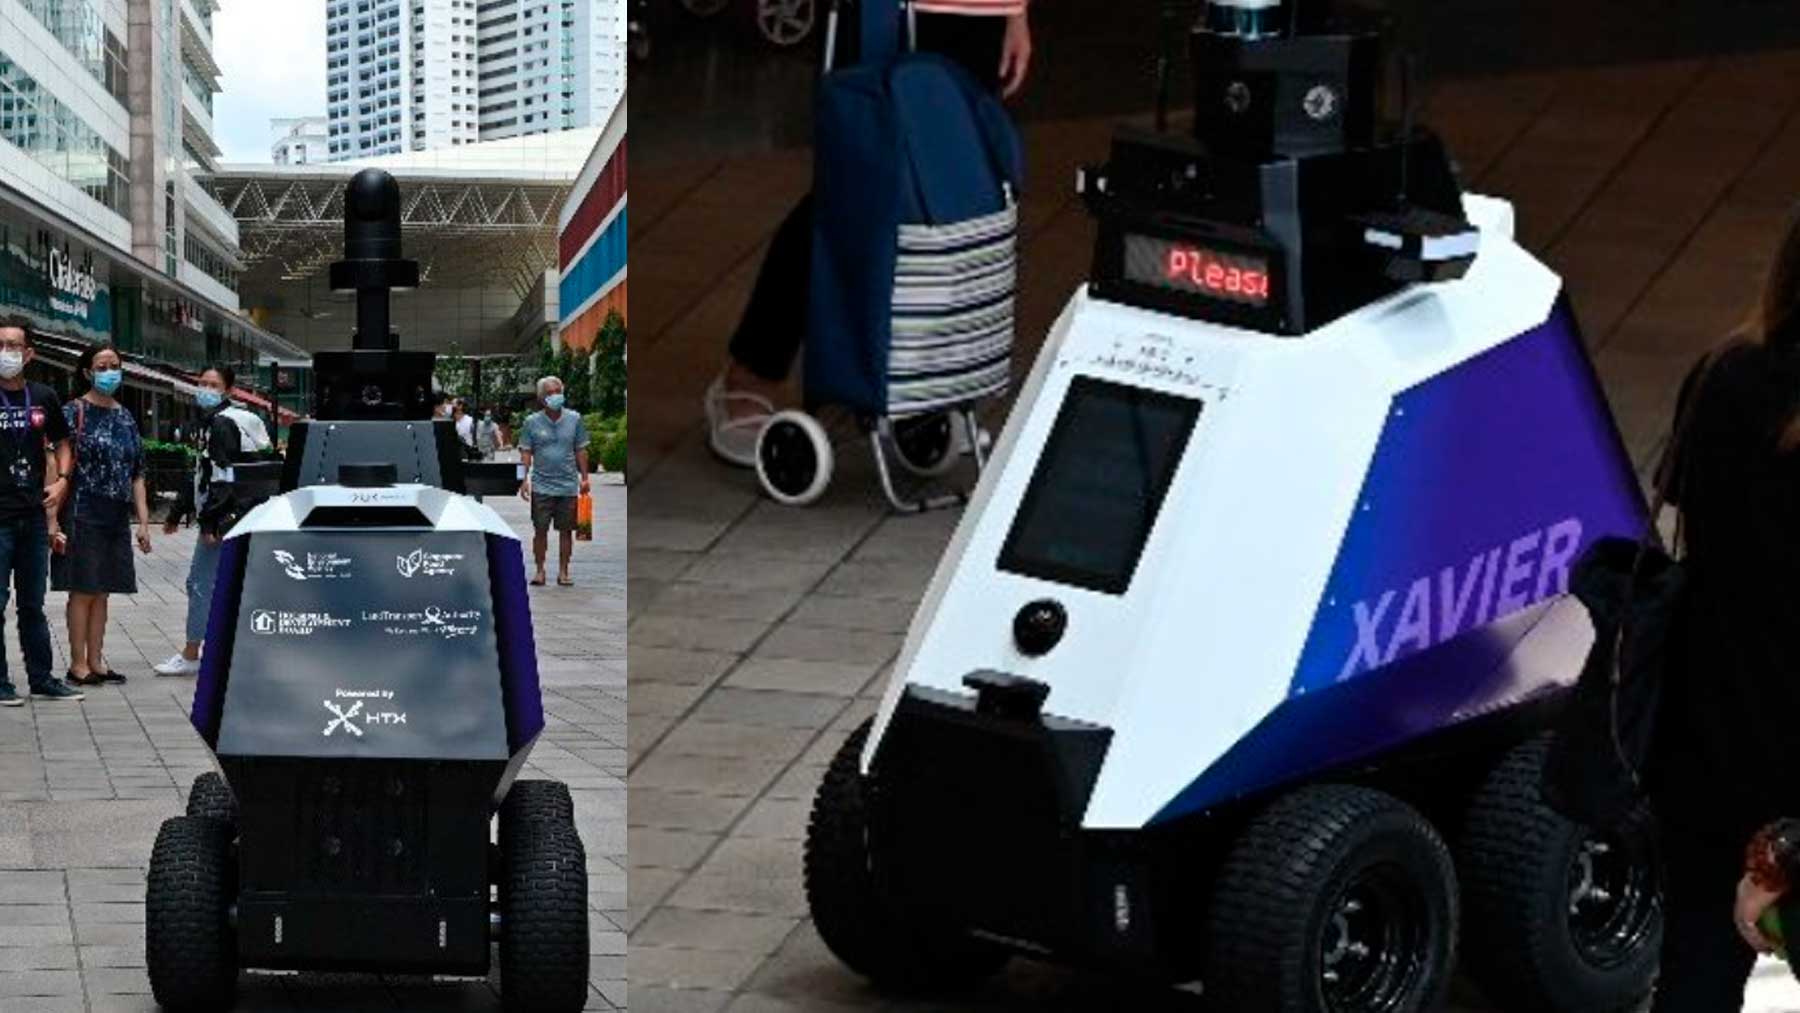 Los nuevos robots de vigilancia patrullan por las calles de Singapur. Foto: Twitter